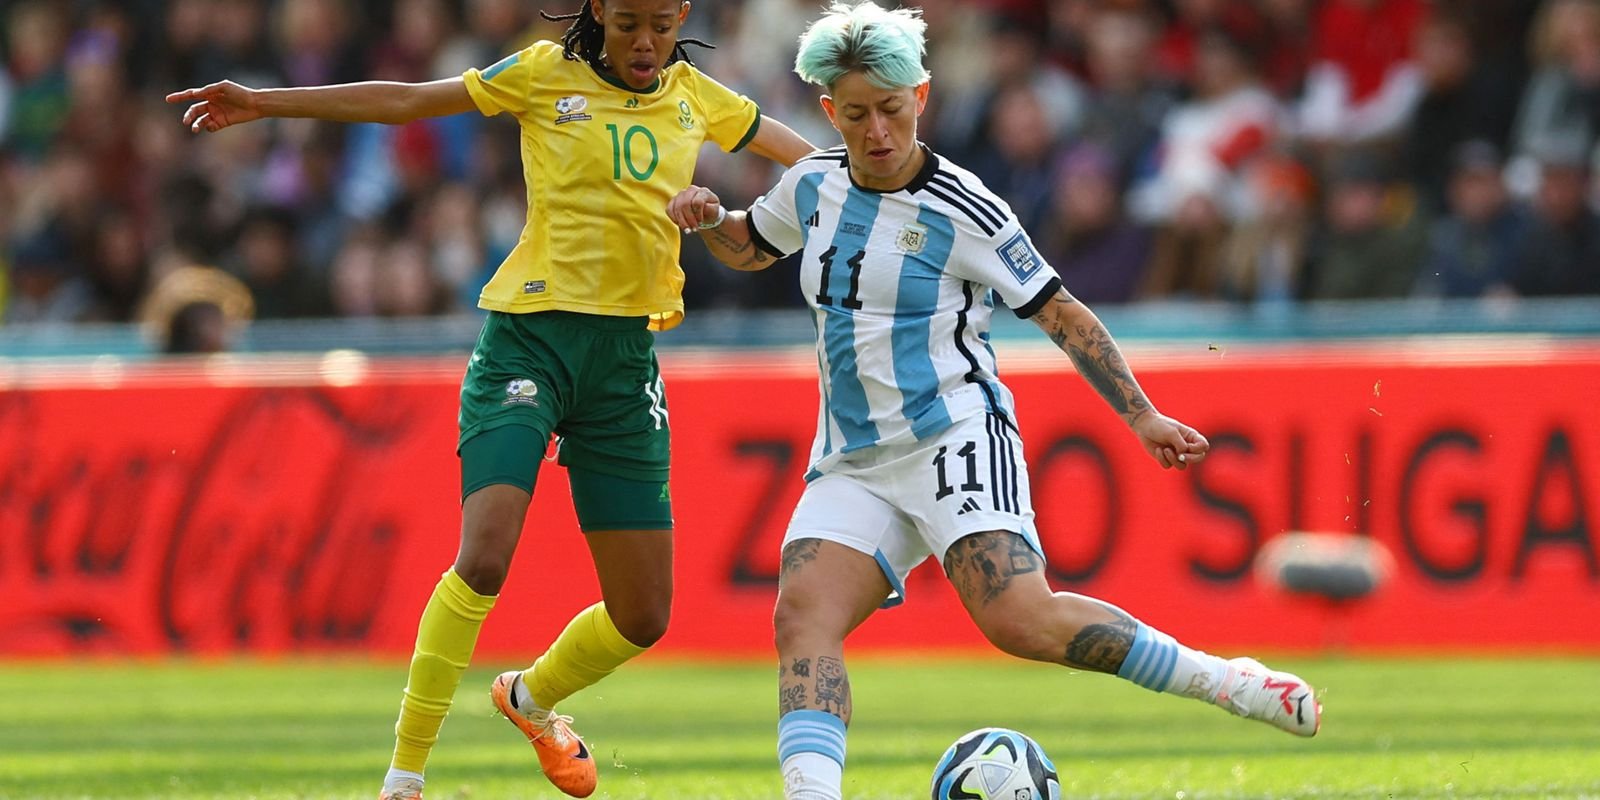 Copa feminina: Argentina e África do Sul empatam em jogo movimentado